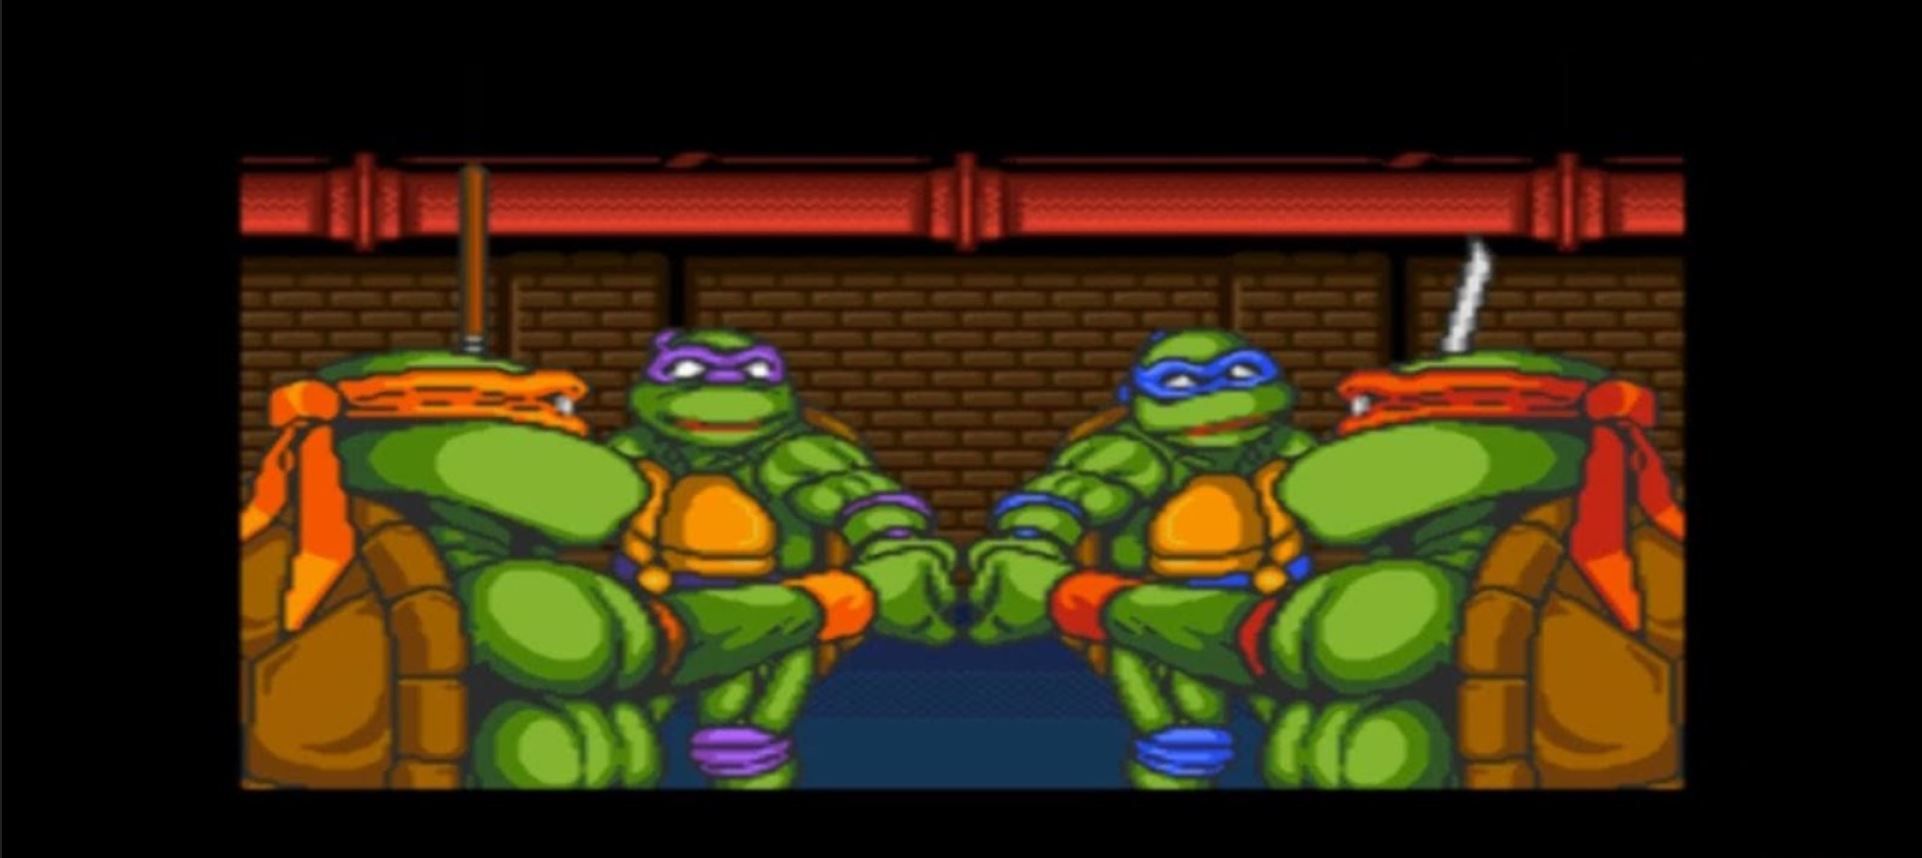 Cowabunga! The Teenage Mutant Ninja Turtles face off in Teenage Mutant Ninja Turtles: Tournament Fighters.